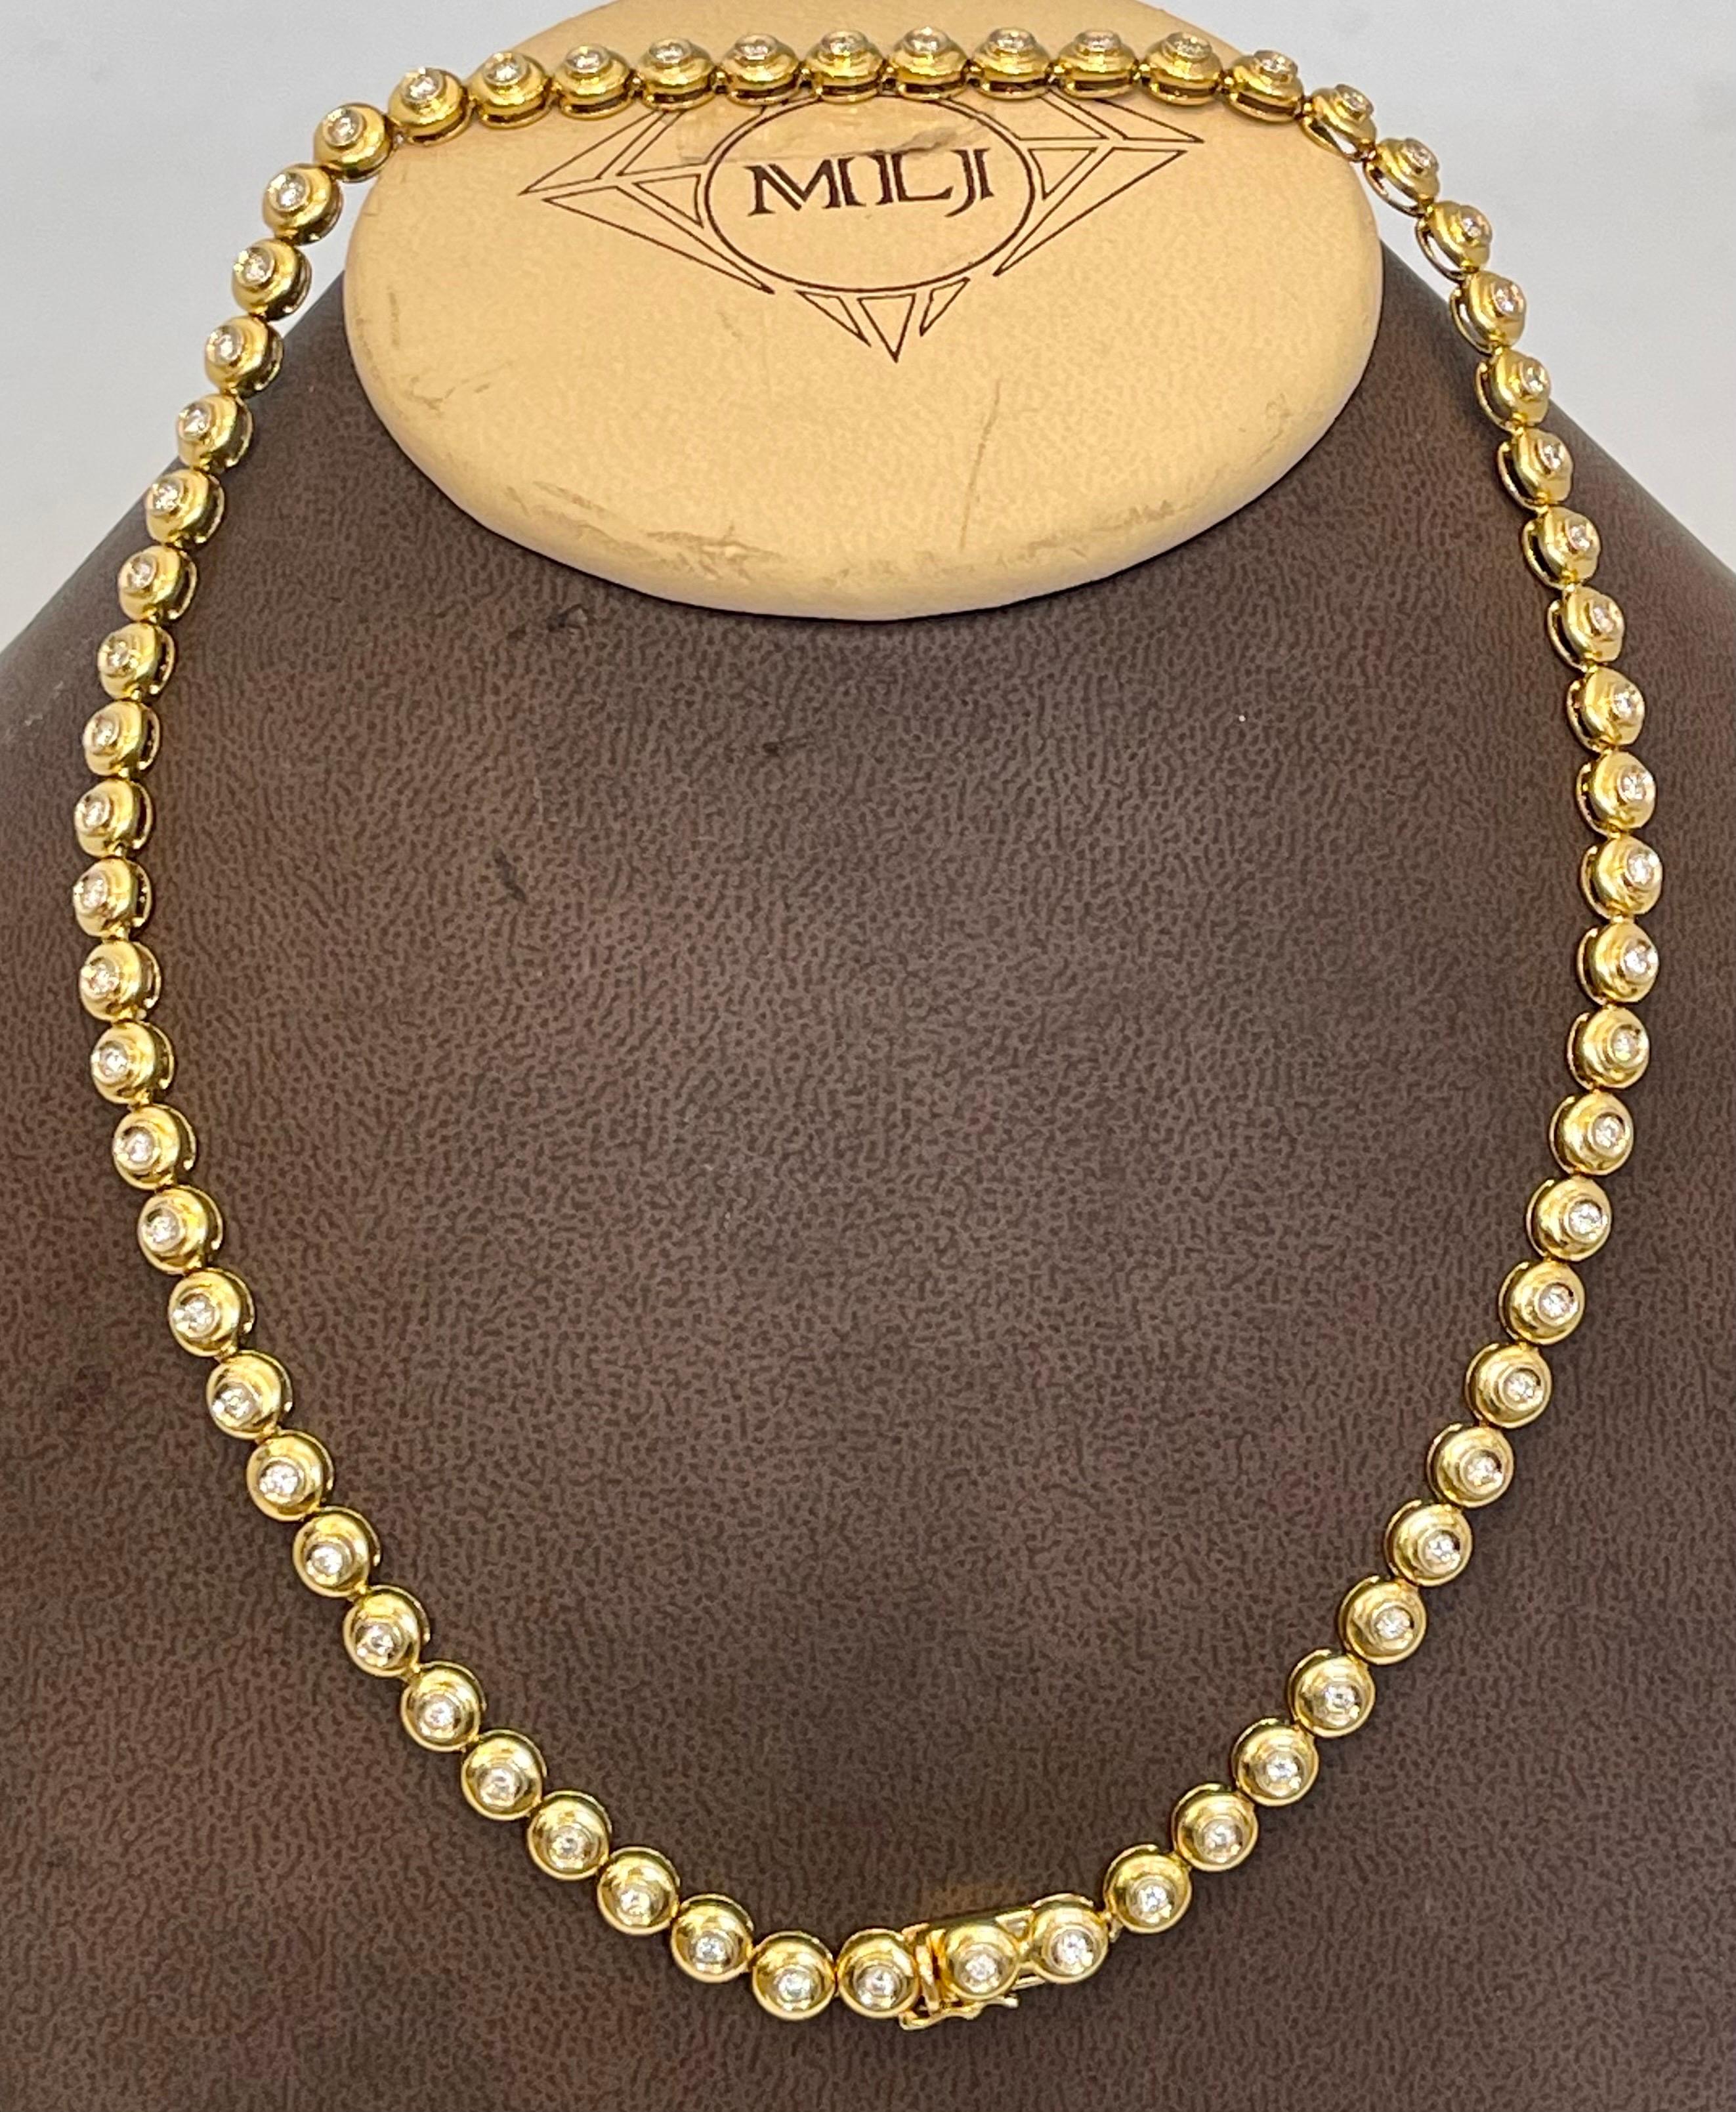 Round 6 Pointer, 4.5Ct Diamond Tennis Necklace 18Karat Yellow Gold 52 Gm, Unisex 4